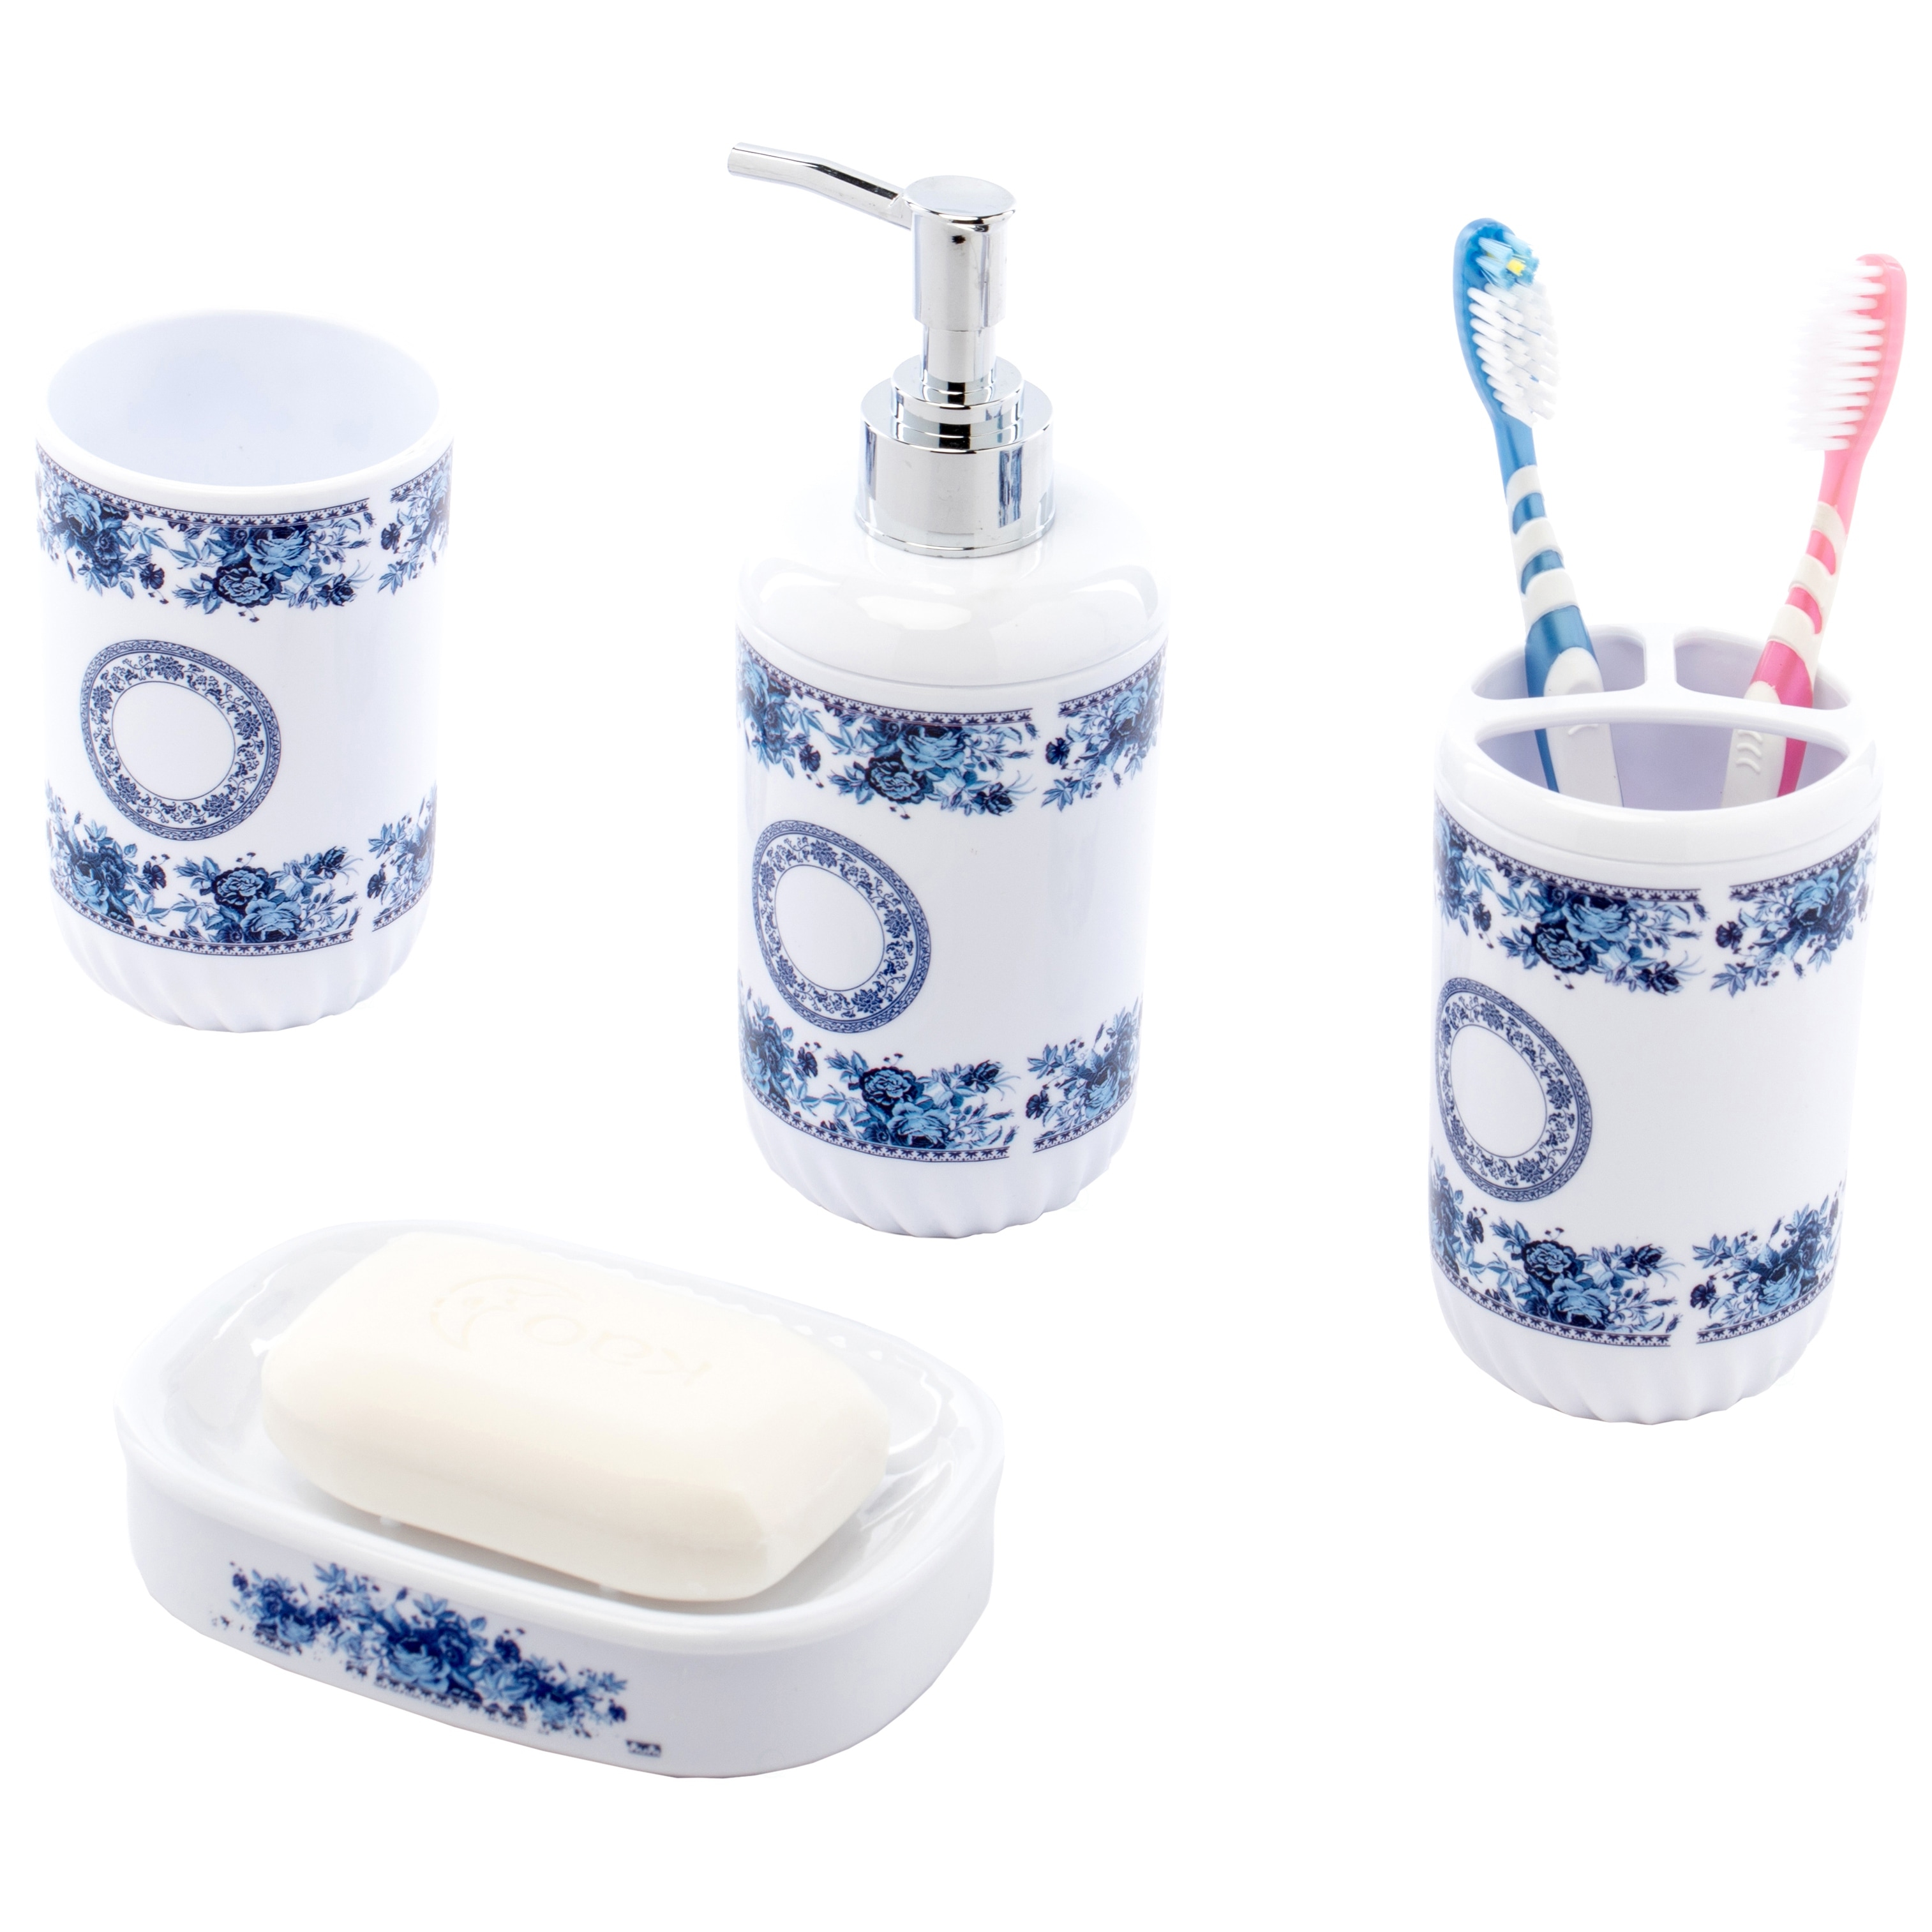 NEW Hand Soap Dispenser Toothbrush Paste Holder Set 2pcrs Black 4ln High Ceramic 